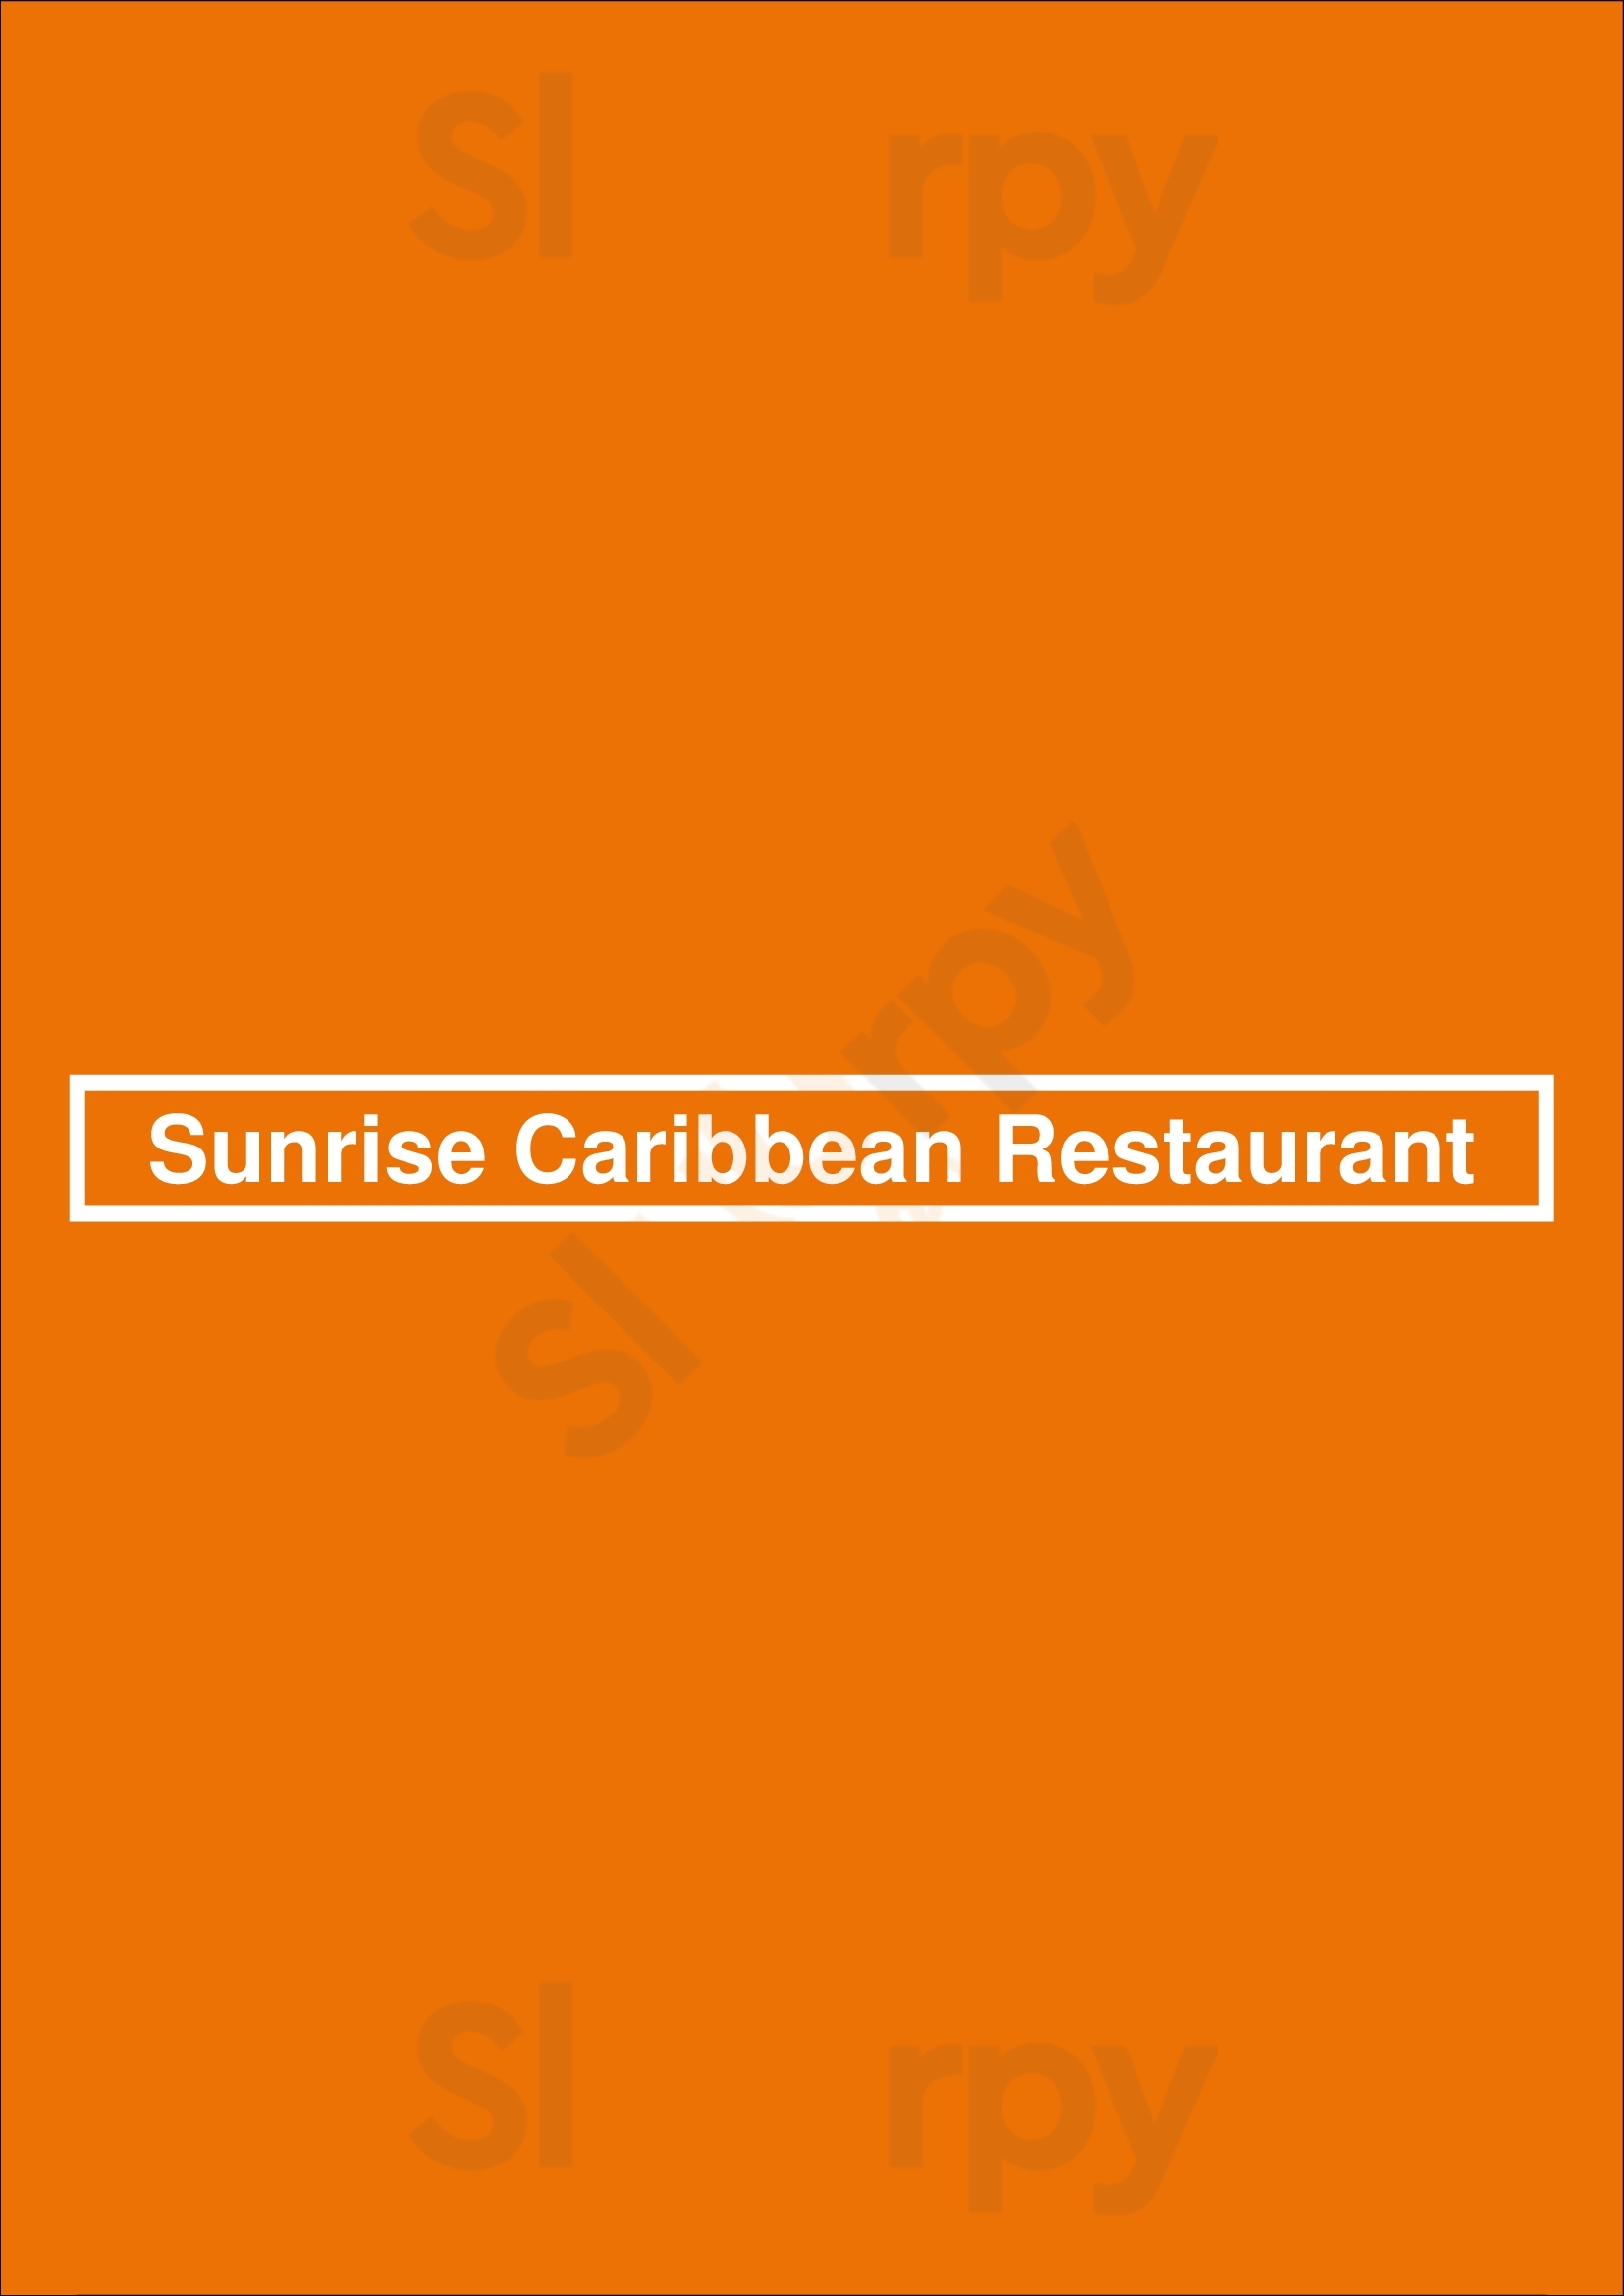 Sunrise Caribbean Restaurant Toronto Menu - 1